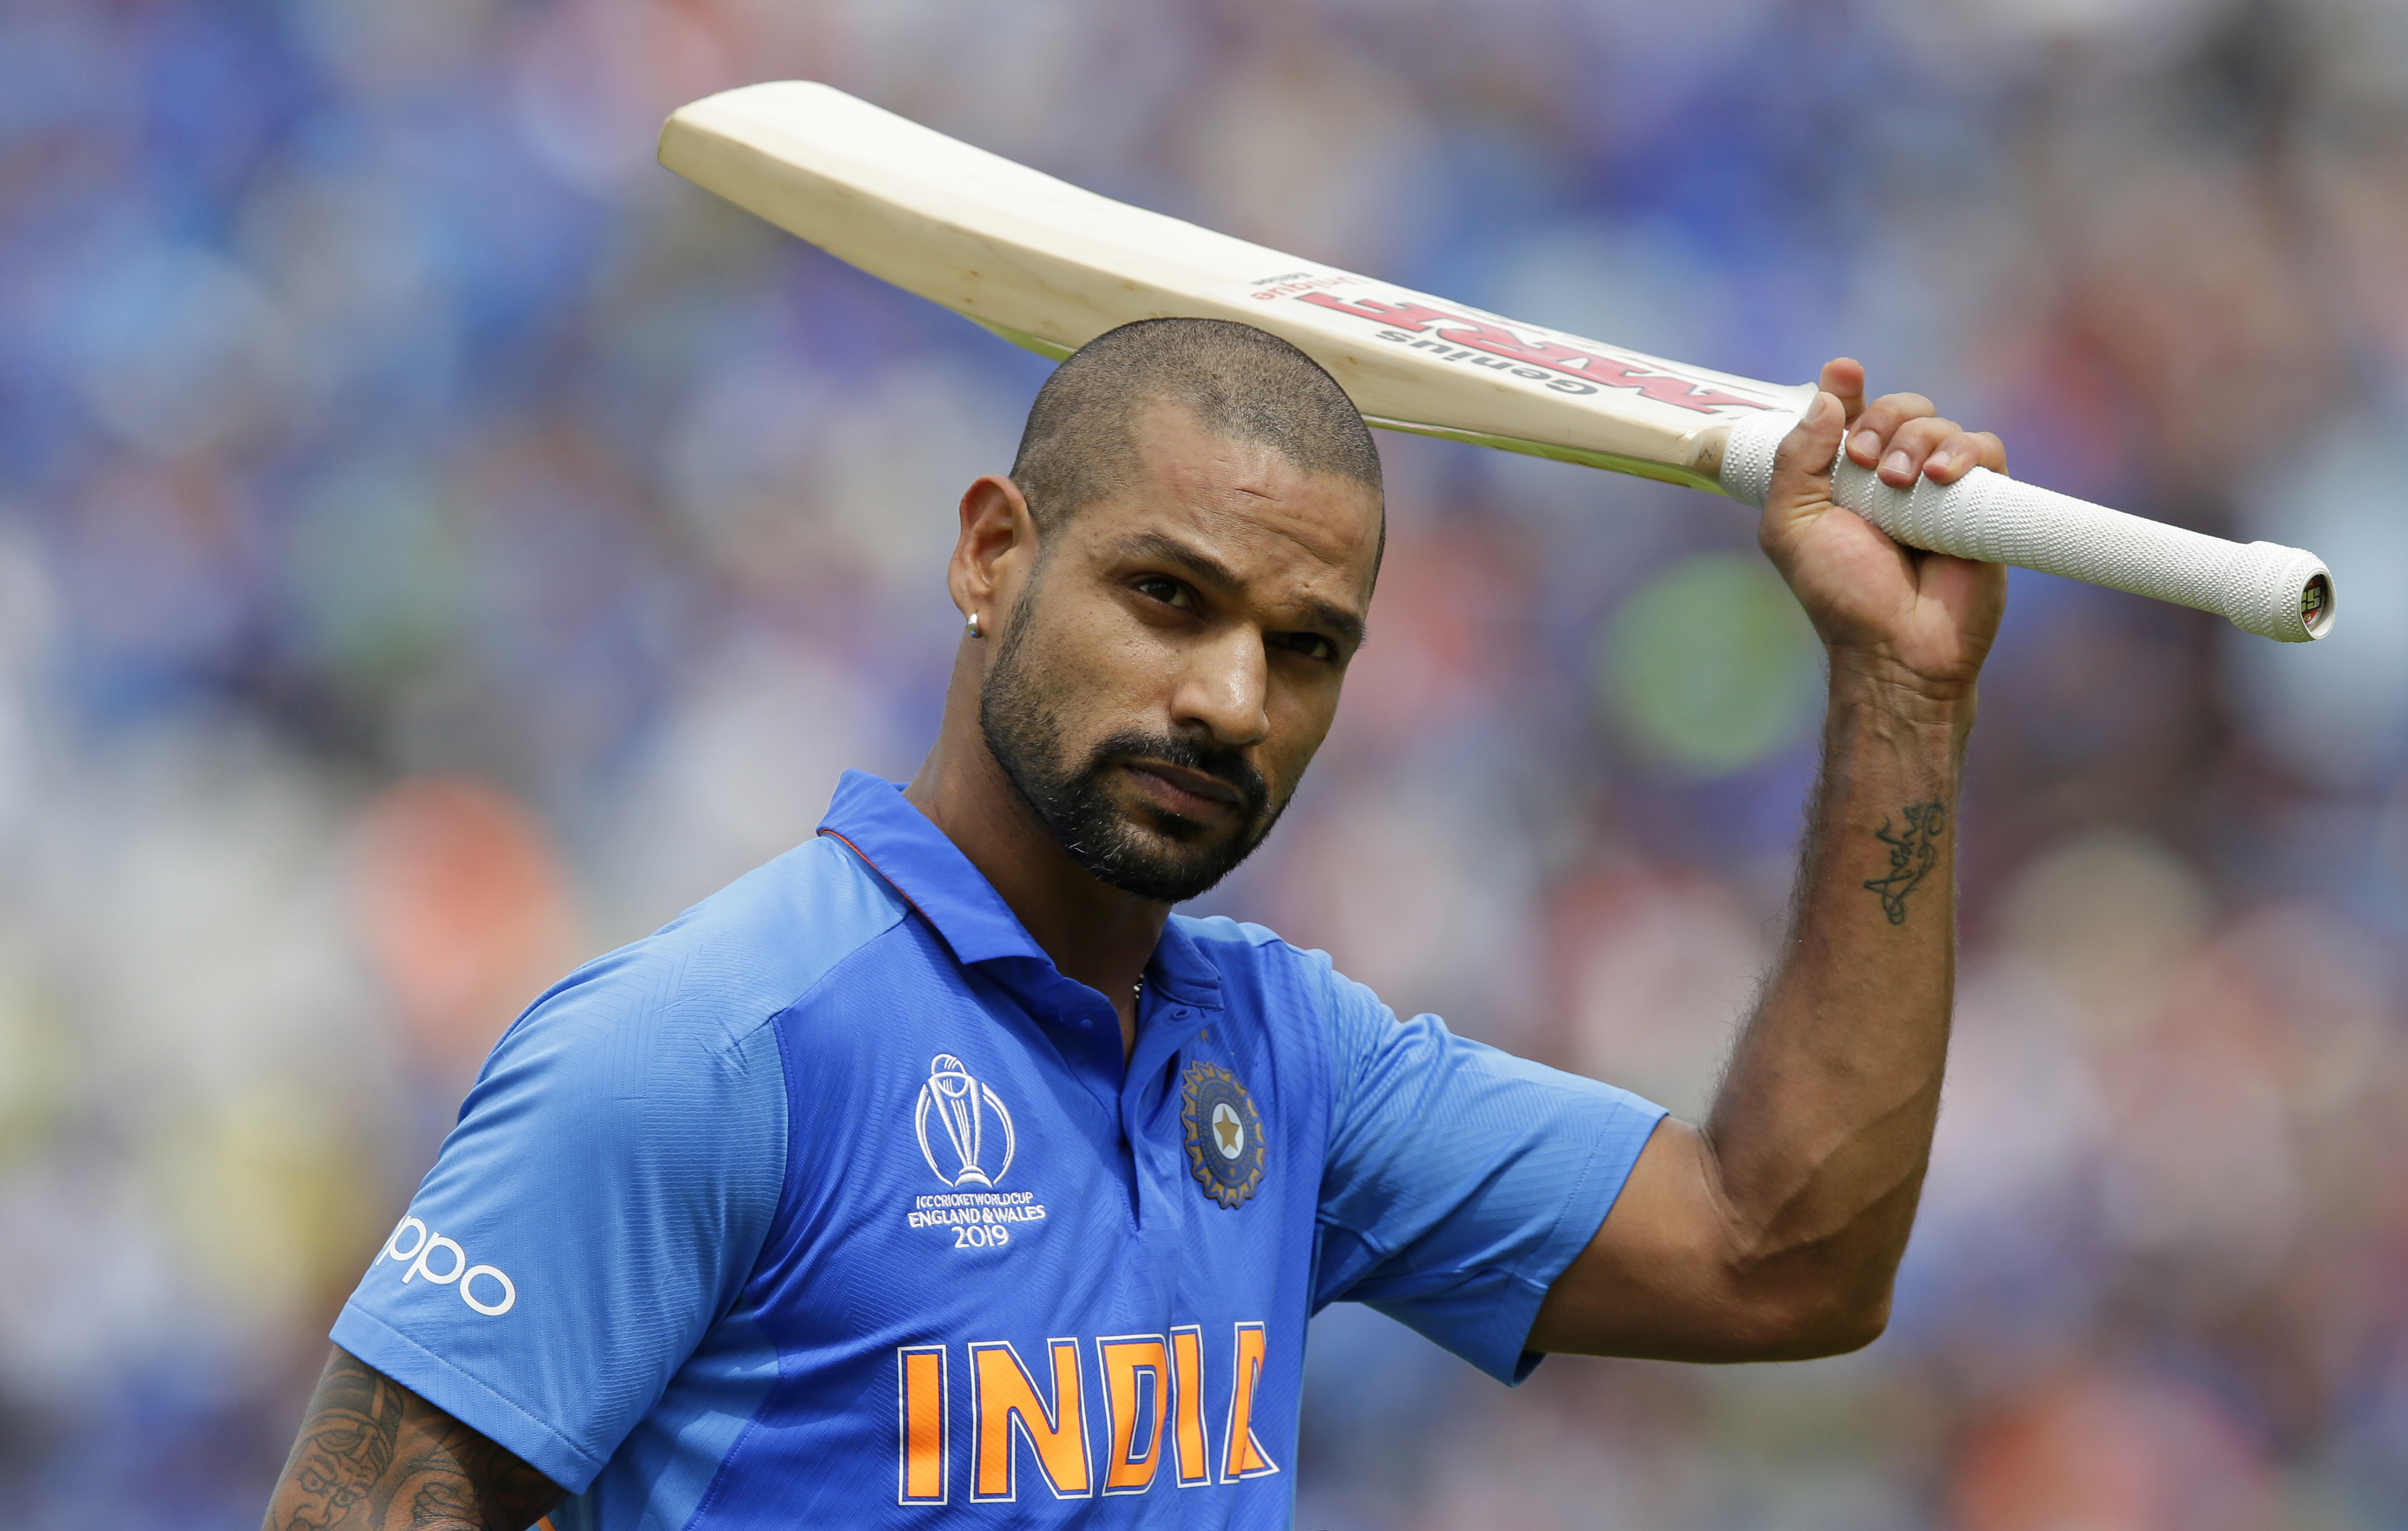 श्रीलंका दौरा : भारतीय क्रिकेट टीम 14 दिनों तक क्वारंटीन में रहेगी, छह बार होगा आरटी-पीसीआर टेस्ट